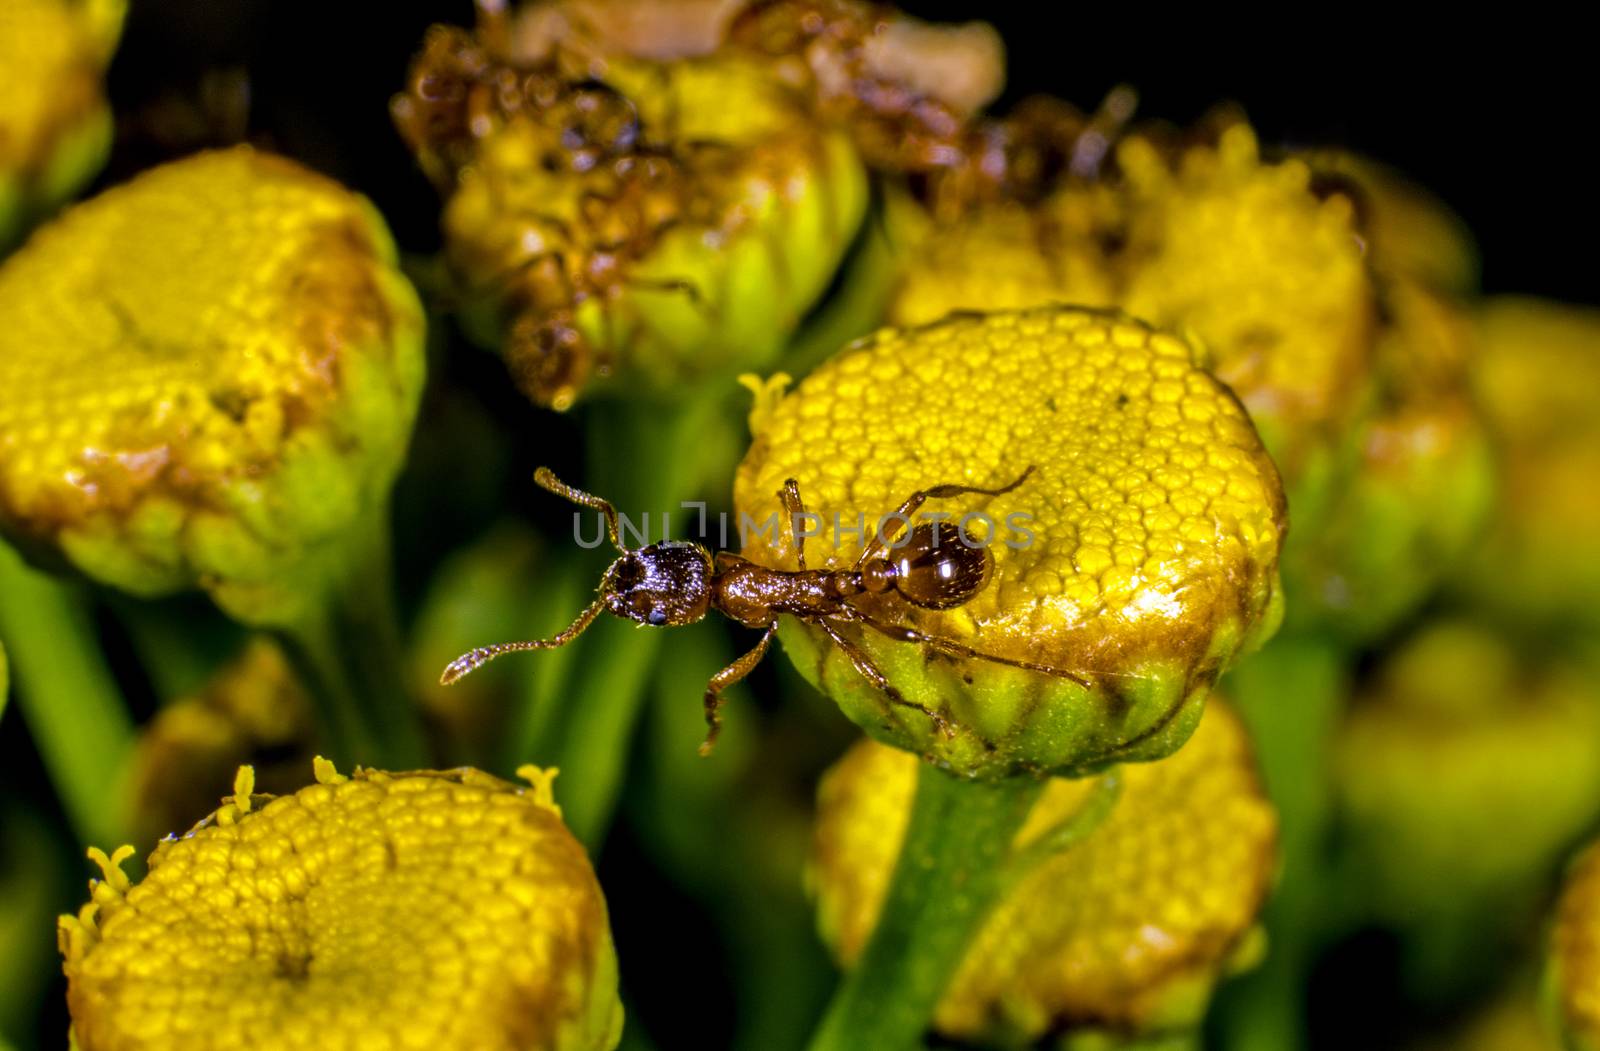 Ants patrolling a flower